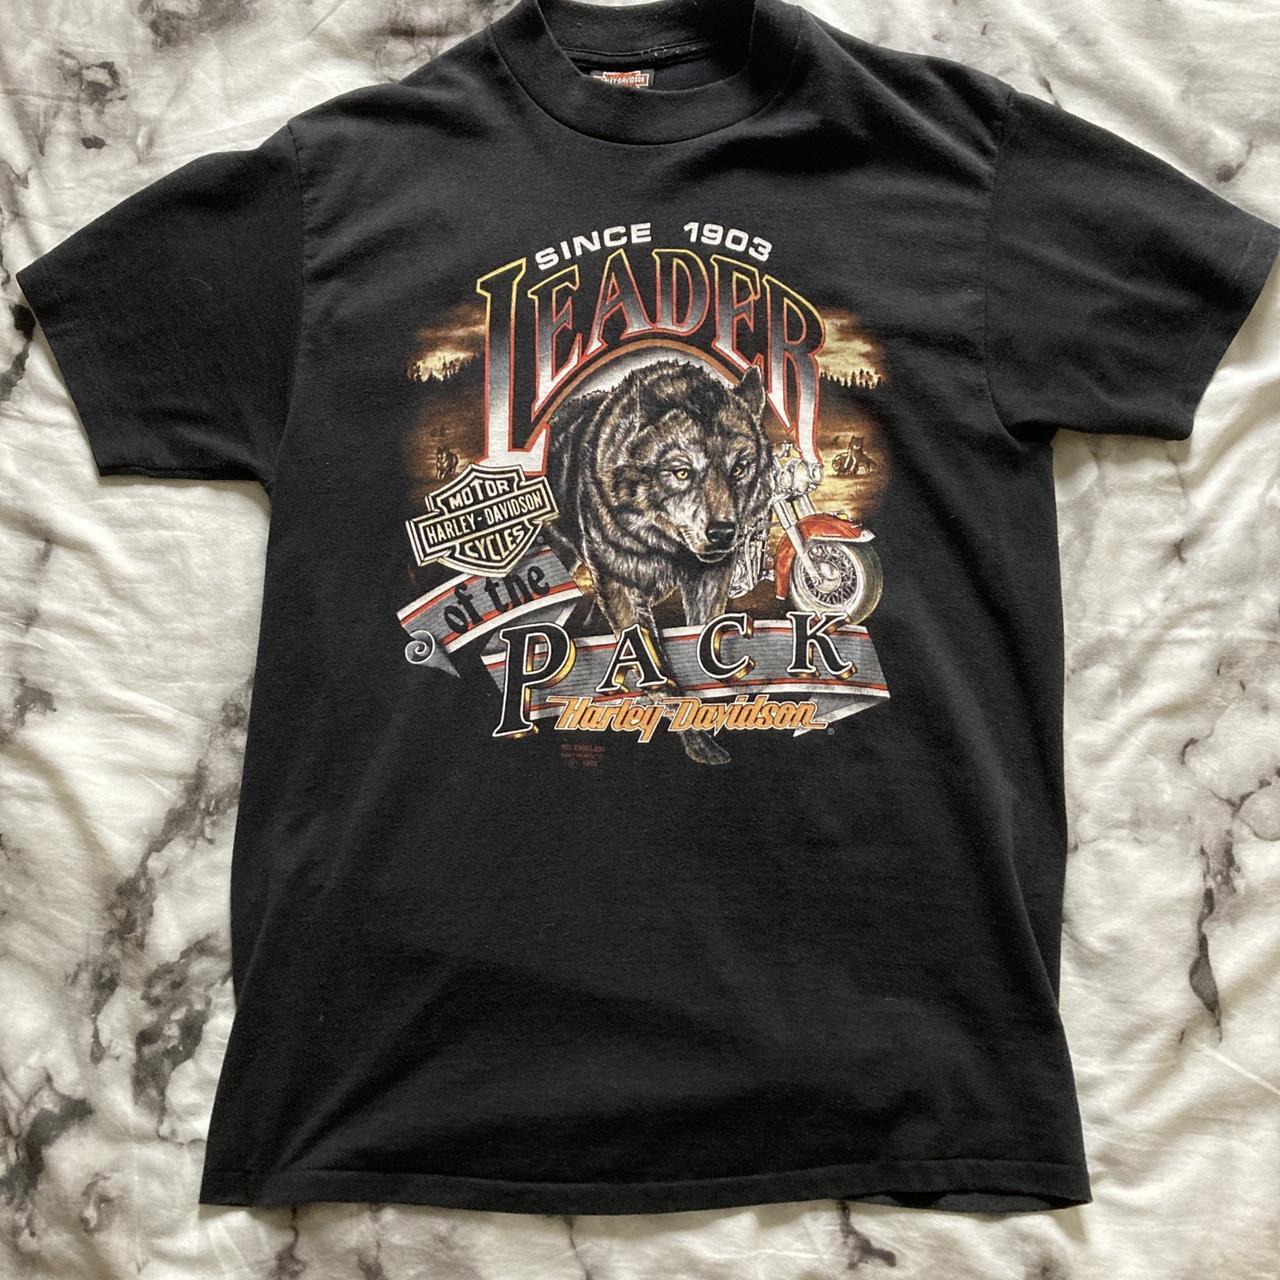 Vintage 1990s Harley Davidson T-shirt Tried my best... - Depop